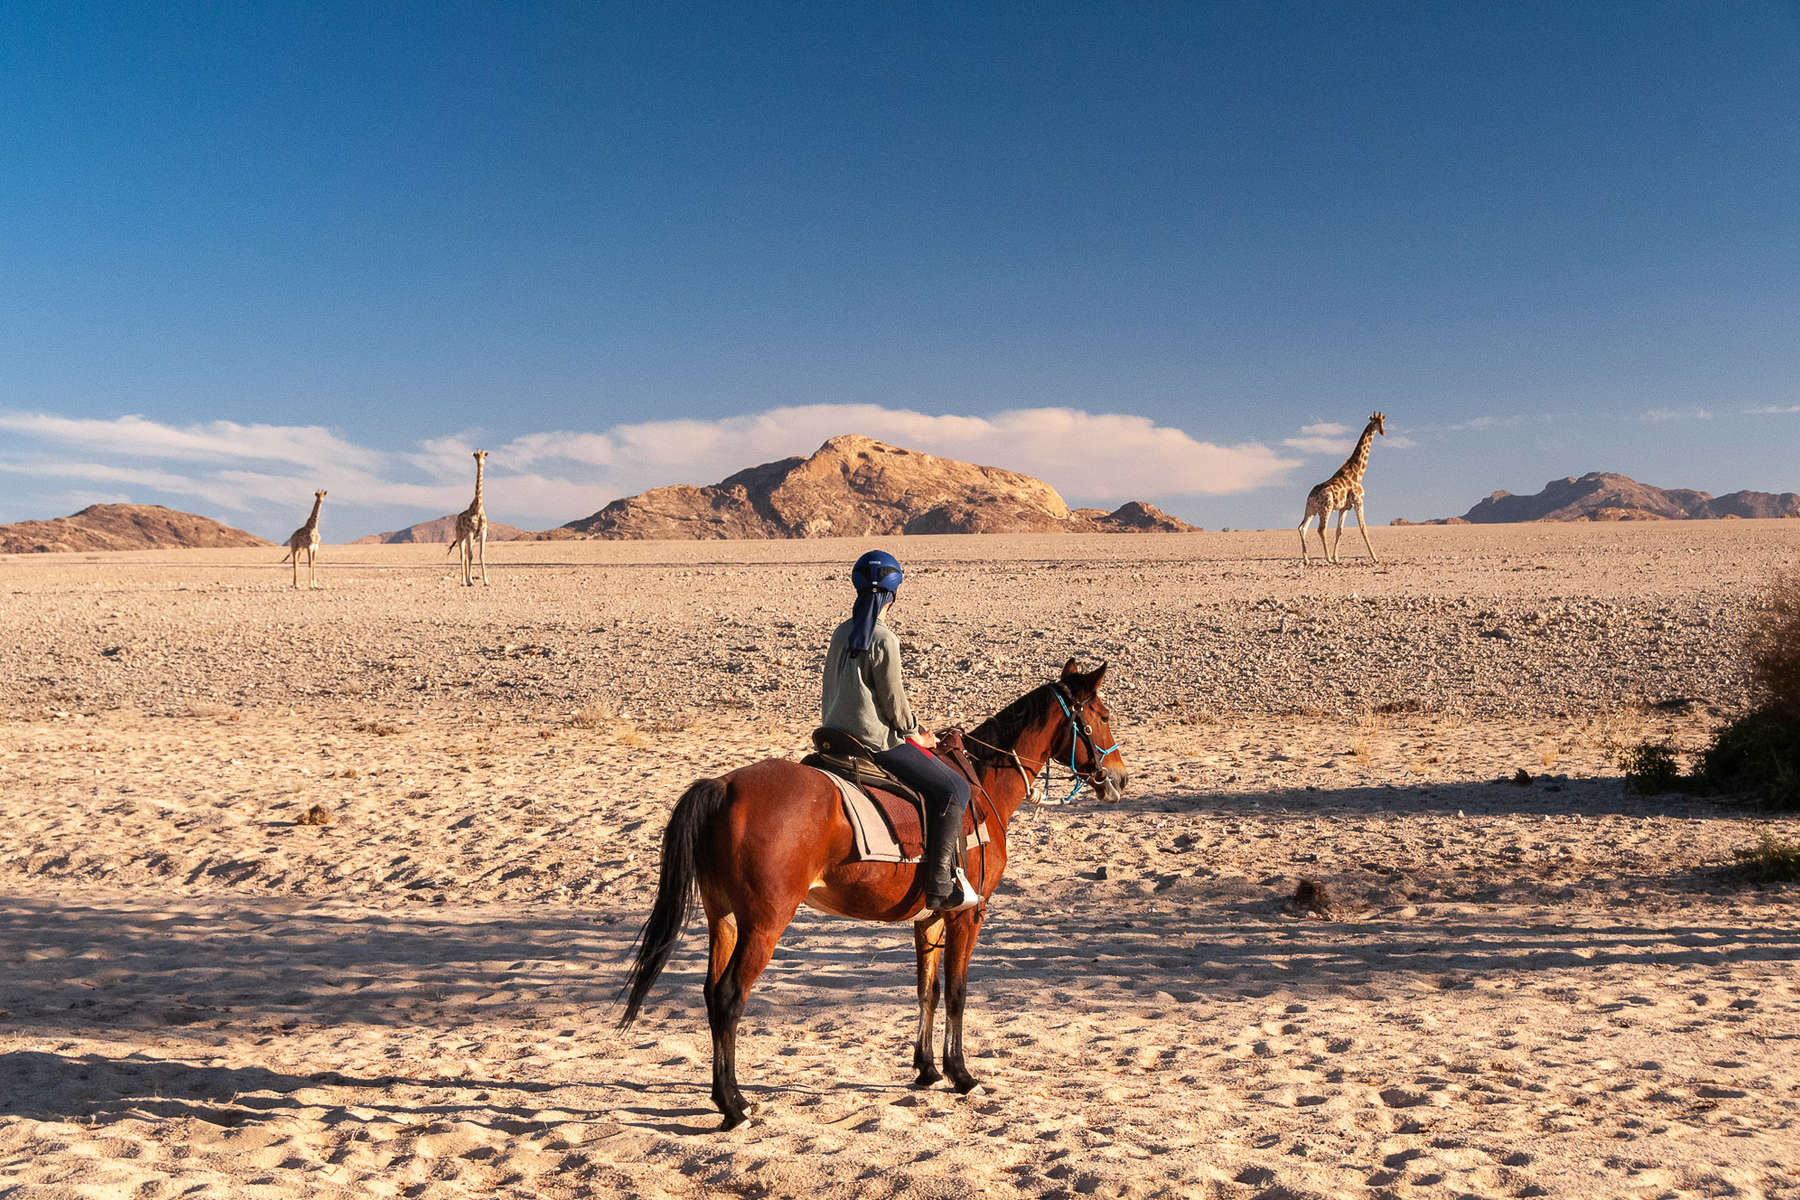 Rider watching giraffe in the Namib Desert